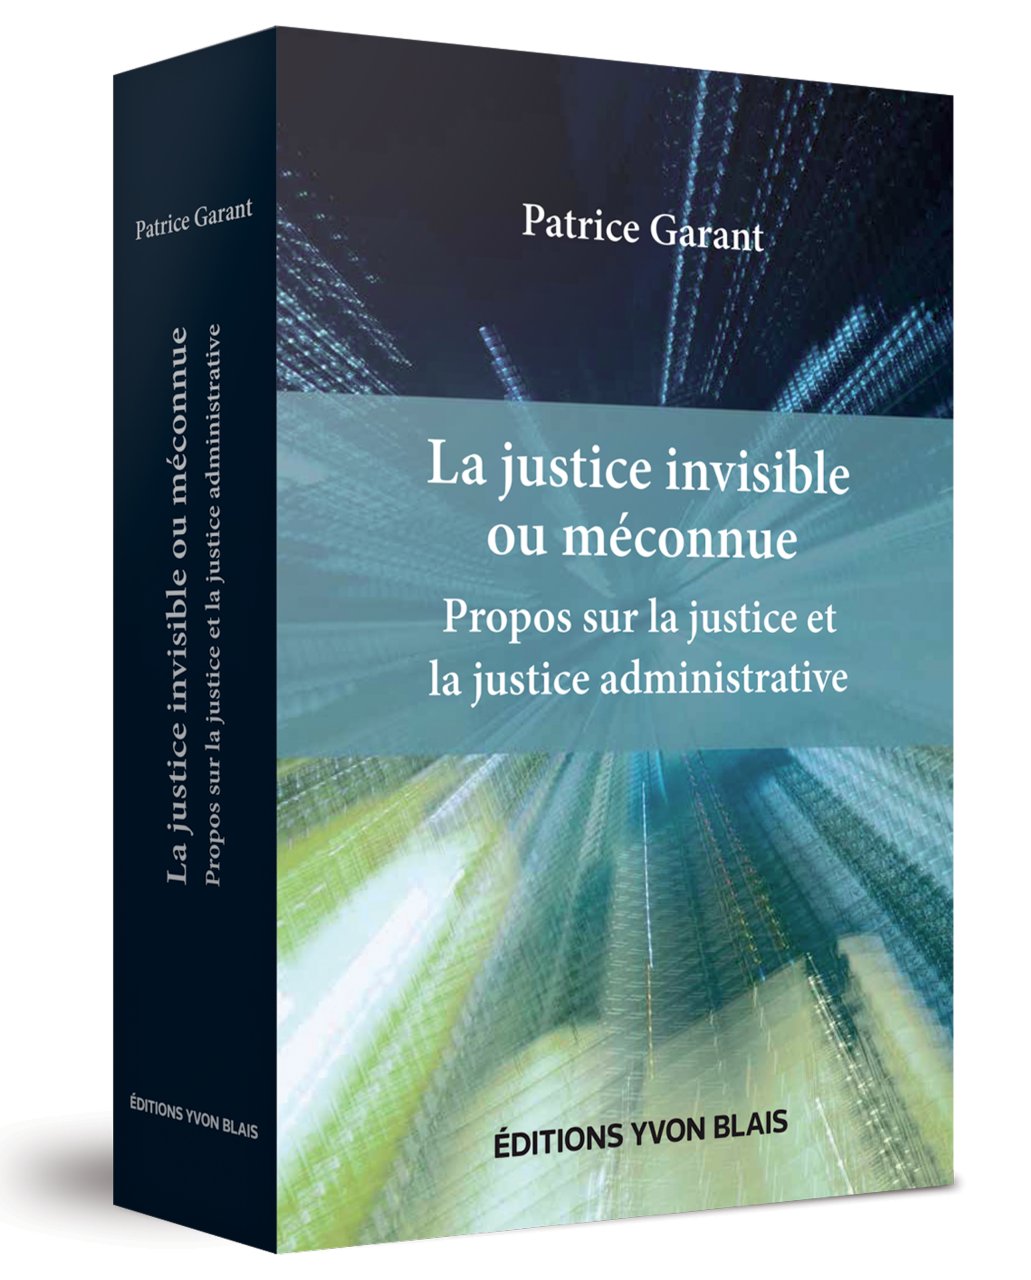 La justice invisible ou méconnue - Propos sur la justice et la justice administrative